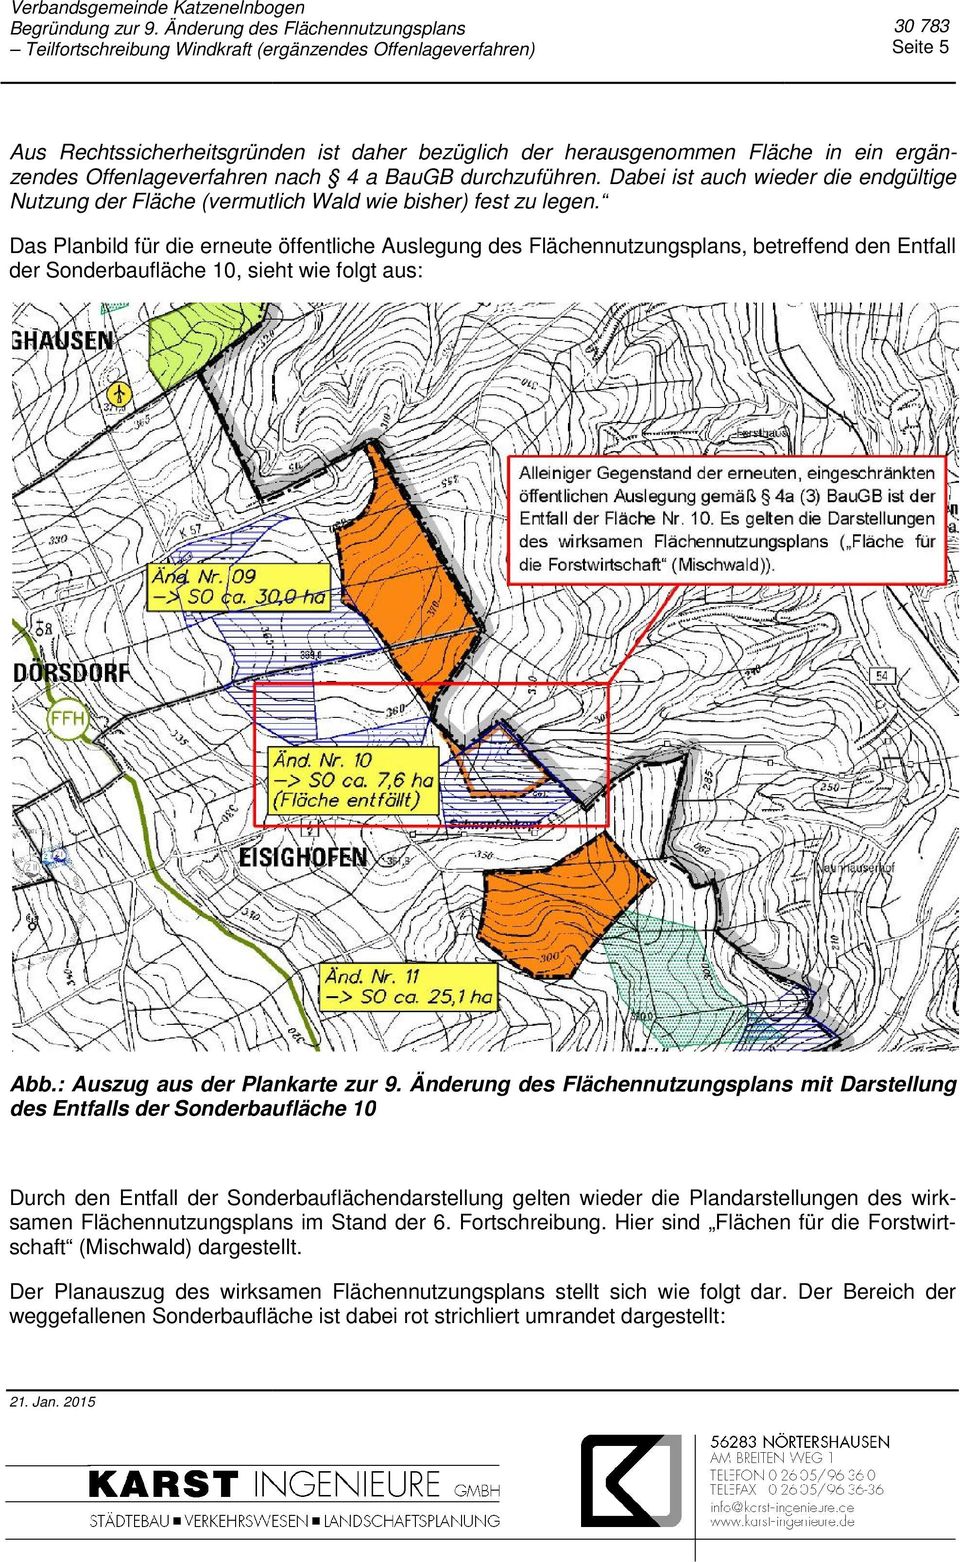 Das Planbild für die erneute öffentliche Auslegung des Flächennutzungsplans, betreffend den Entfall der Sonderbaufläche 10, sieht wie folgt aus: Abb.: Auszug aus der Plankarte zur 9.